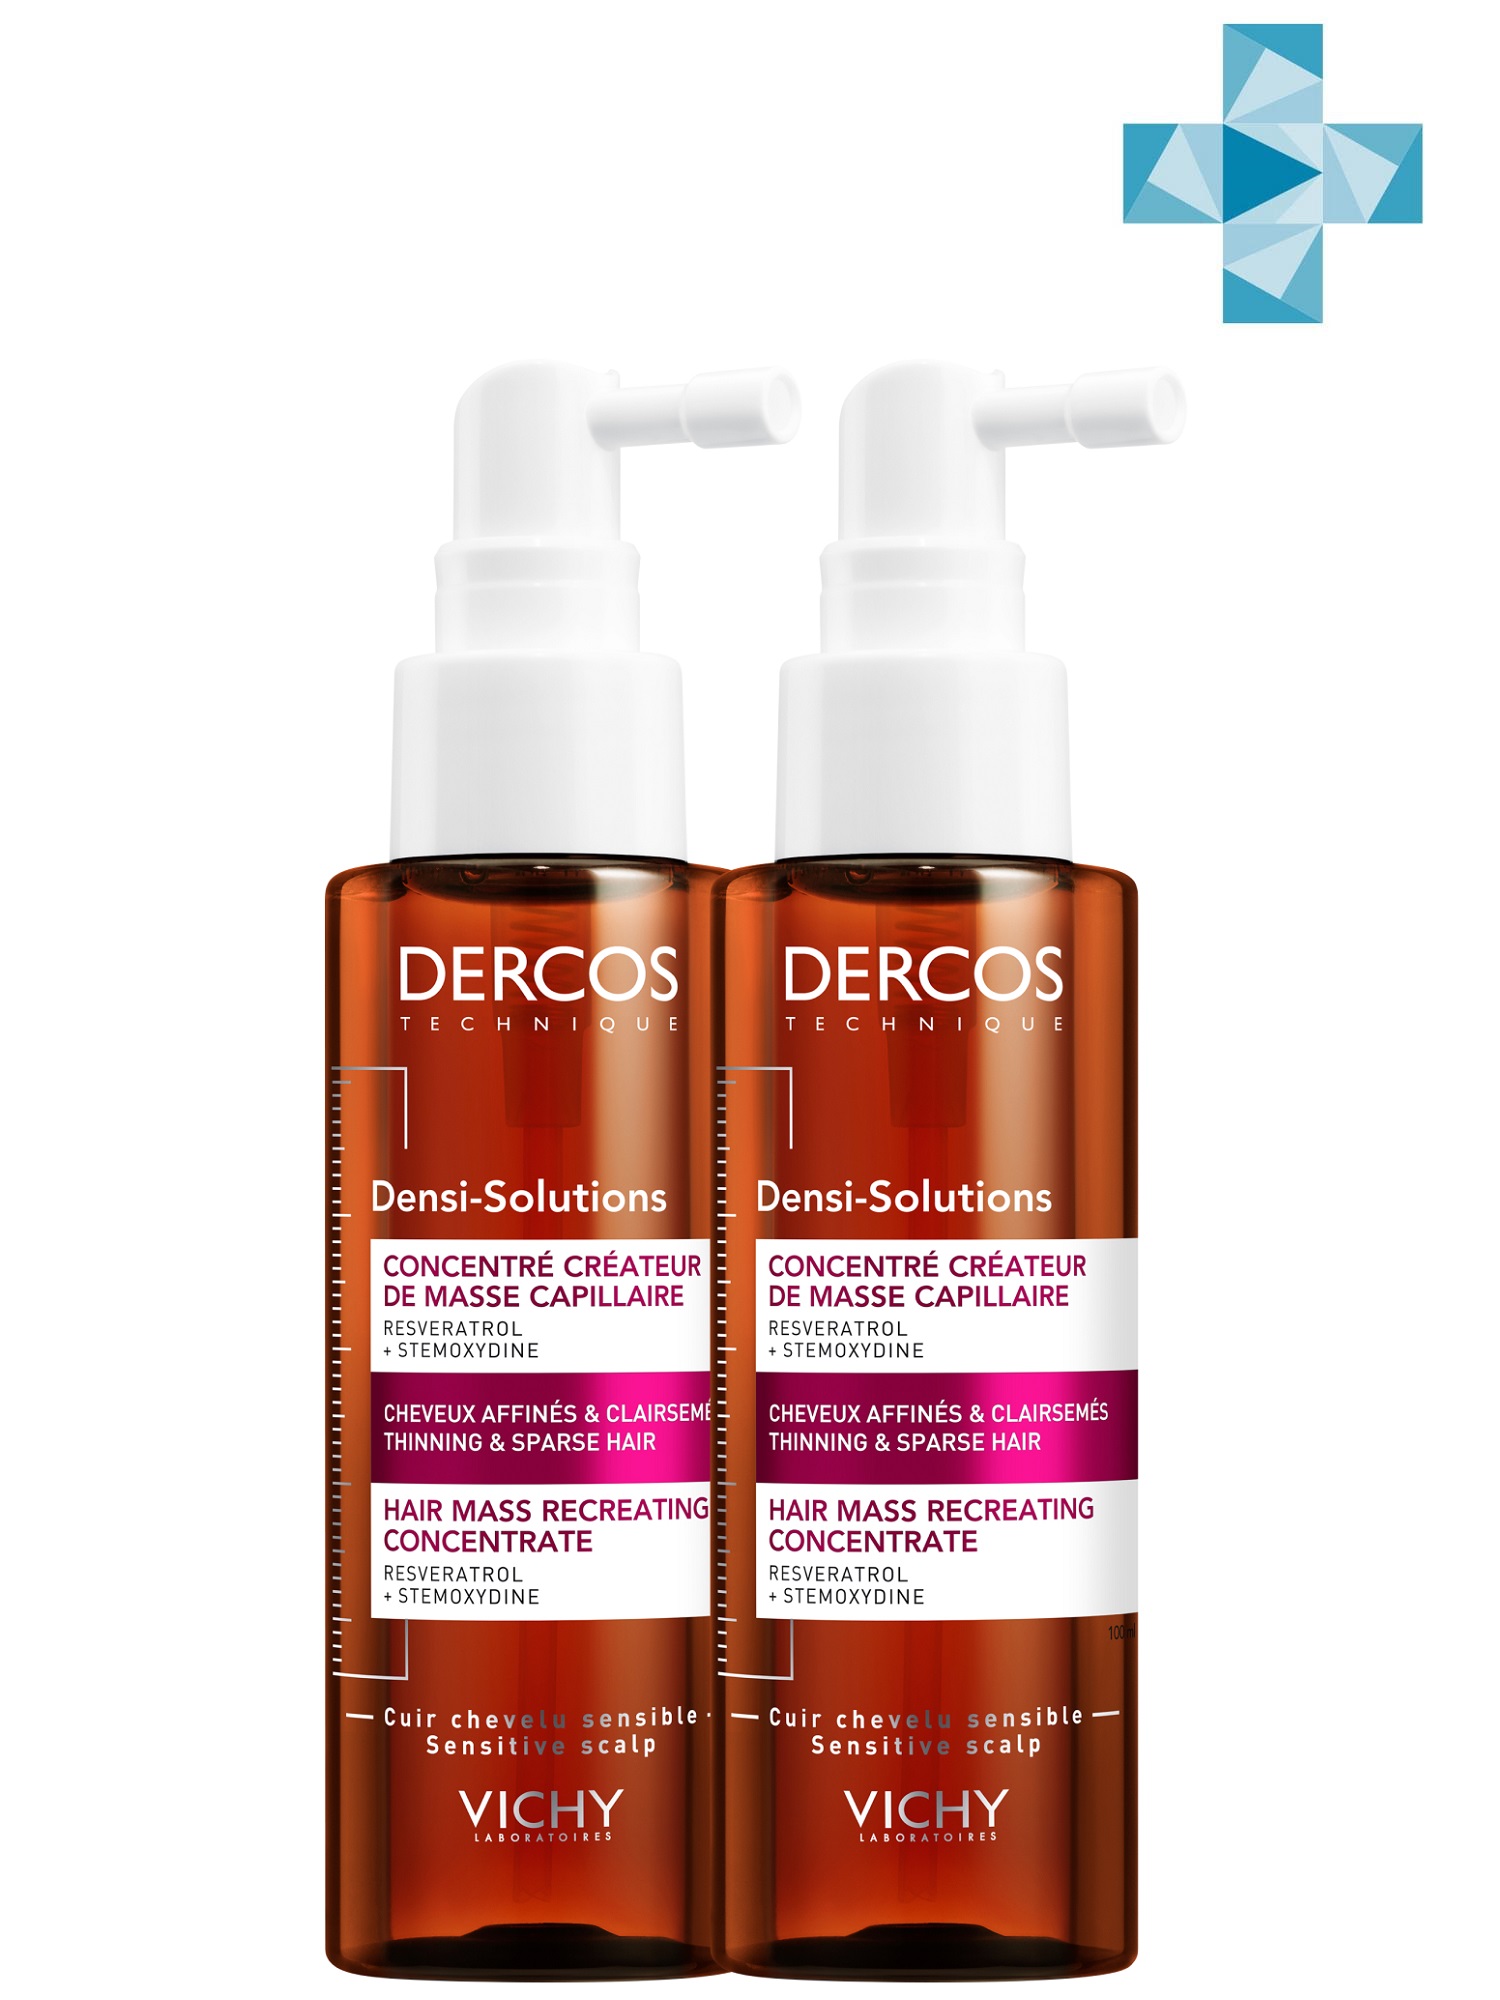 Купить Vichy Комплект Сыворотка для роста волос Densi-Solutions, 2 шт. по 100 мл (Vichy, Dercos Densi-Solutions), Франция